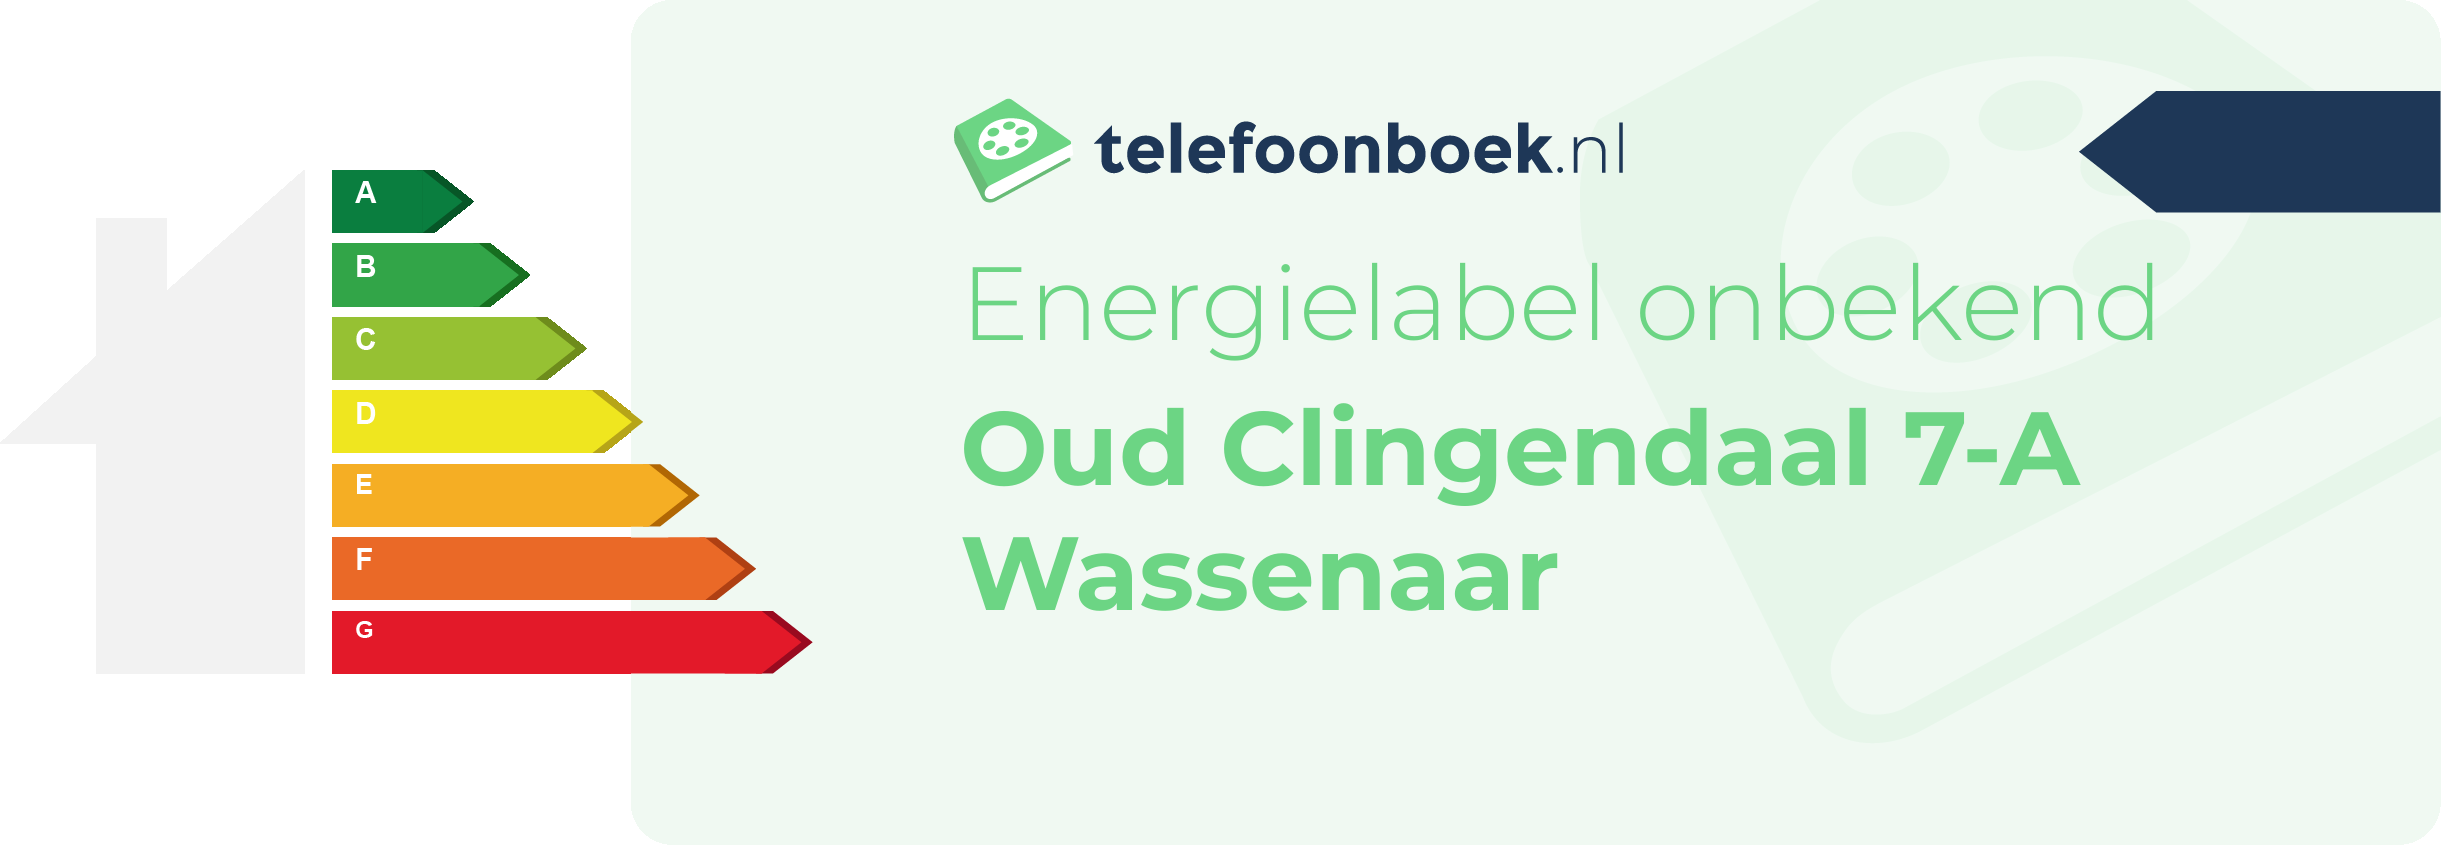 Energielabel Oud Clingendaal 7-A Wassenaar